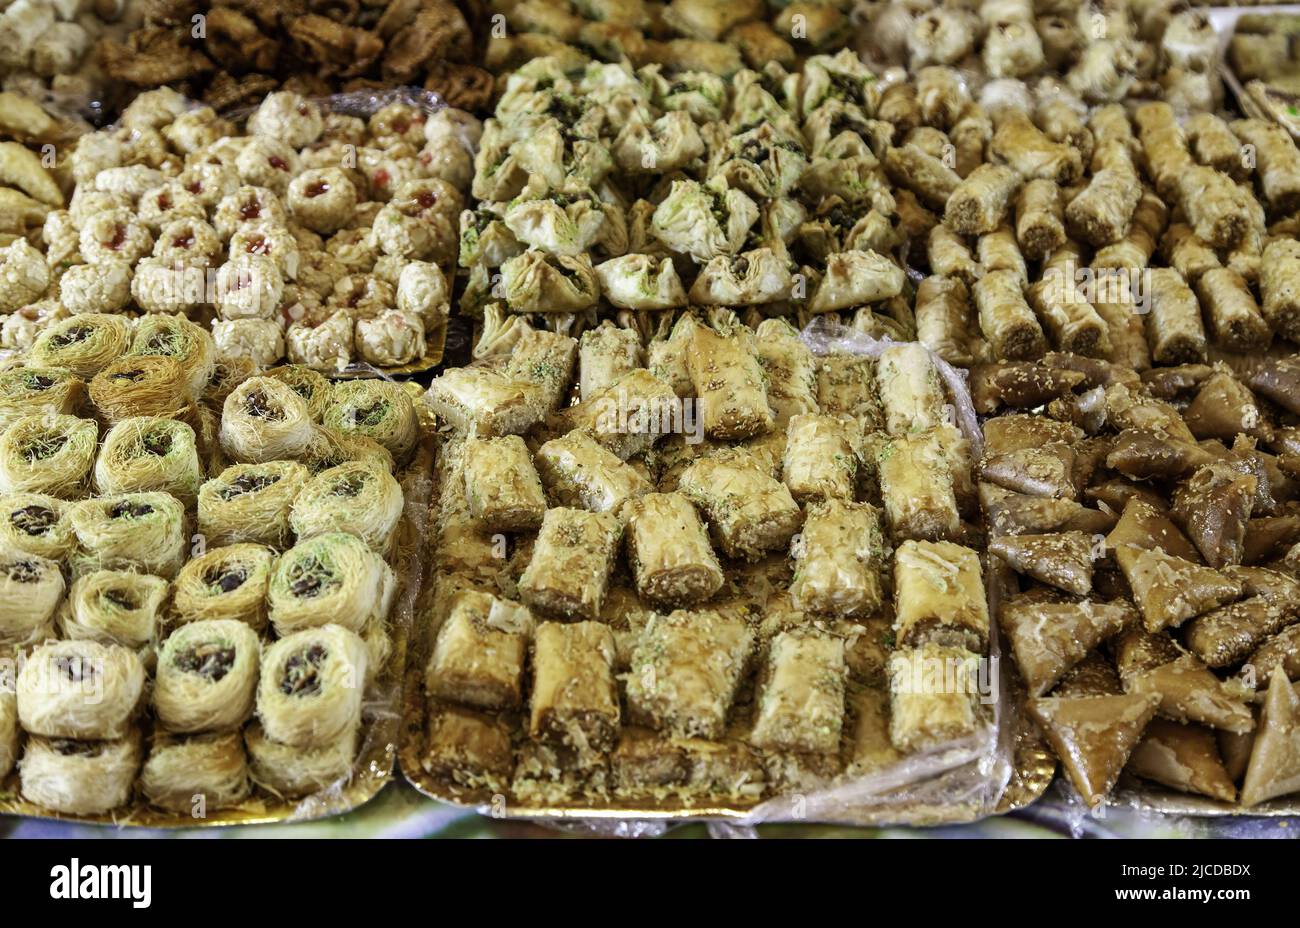 Détail de gâteaux artisanaux du Maroc, artisanat traditionnel, sucré Banque D'Images